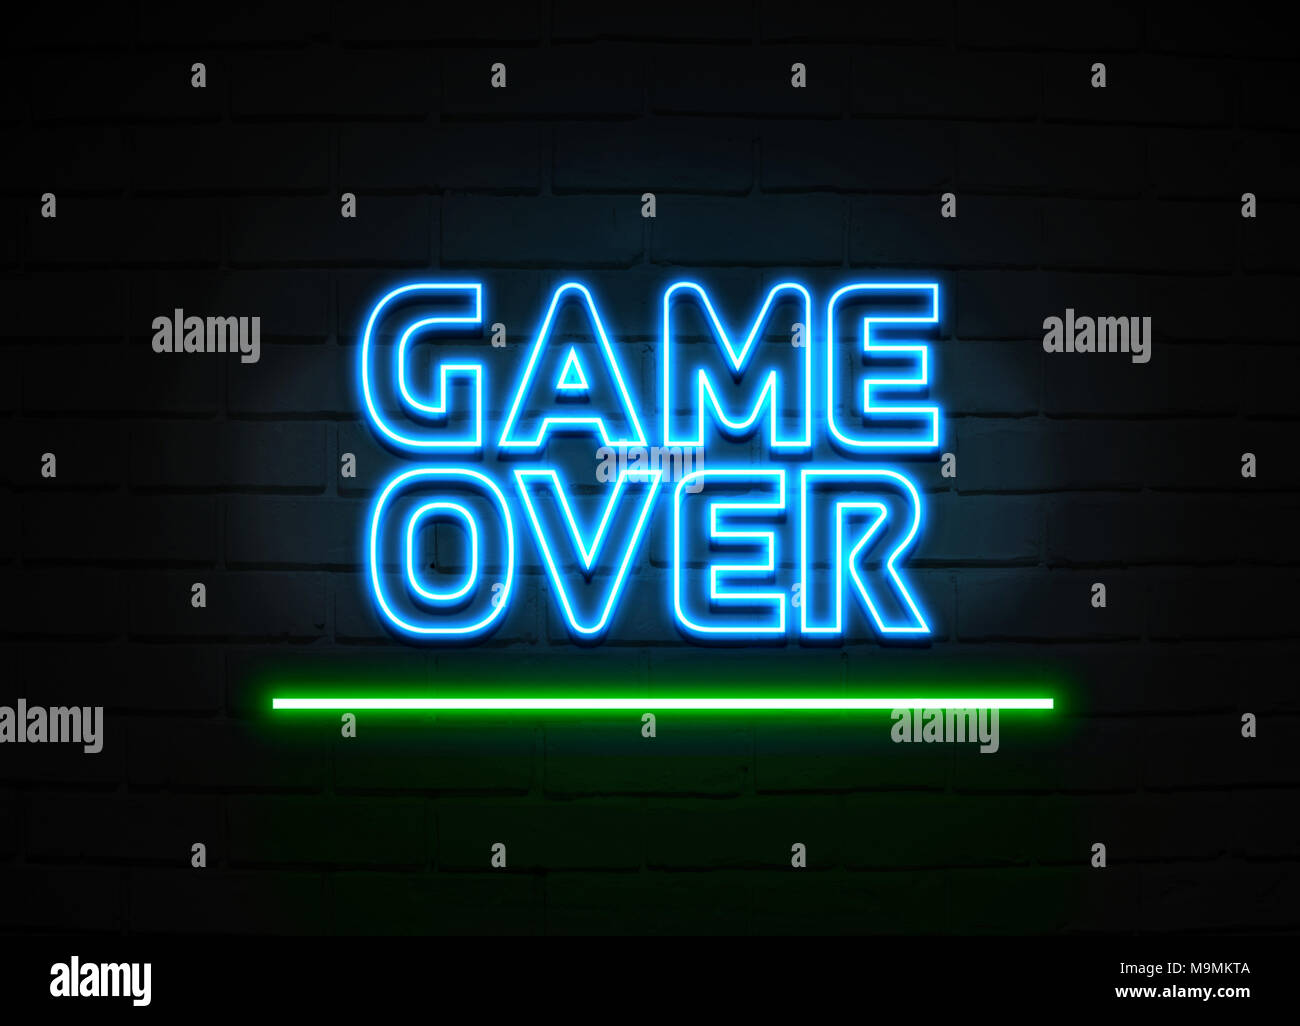 Game Over Leuchtreklame - glühende Leuchtreklame auf brickwall Wand - 3D-Royalty Free Stock Illustration dargestellt. Stockfoto